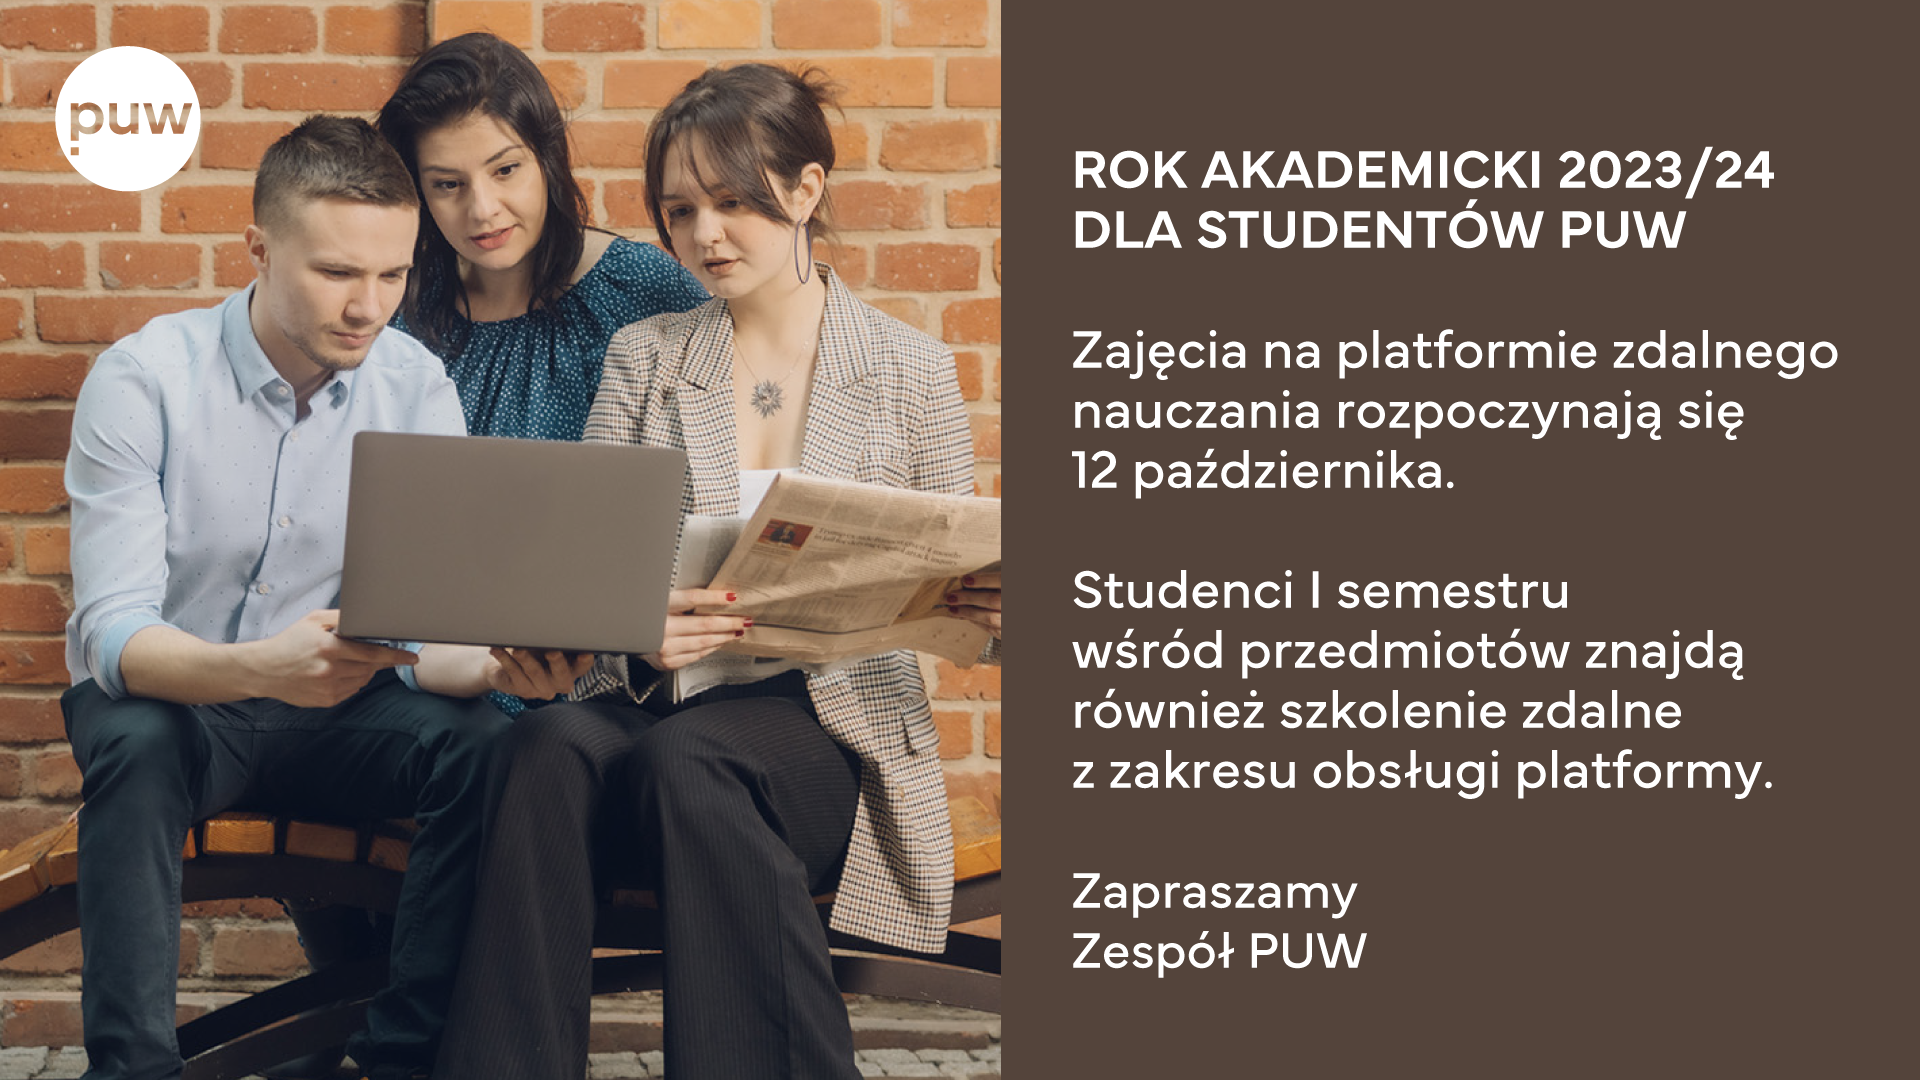 Rok akademicki 2023/24 dla studentów PUW
Zajęcia na platformie zdalnego nauczania rozpoczynają się 12 października.
